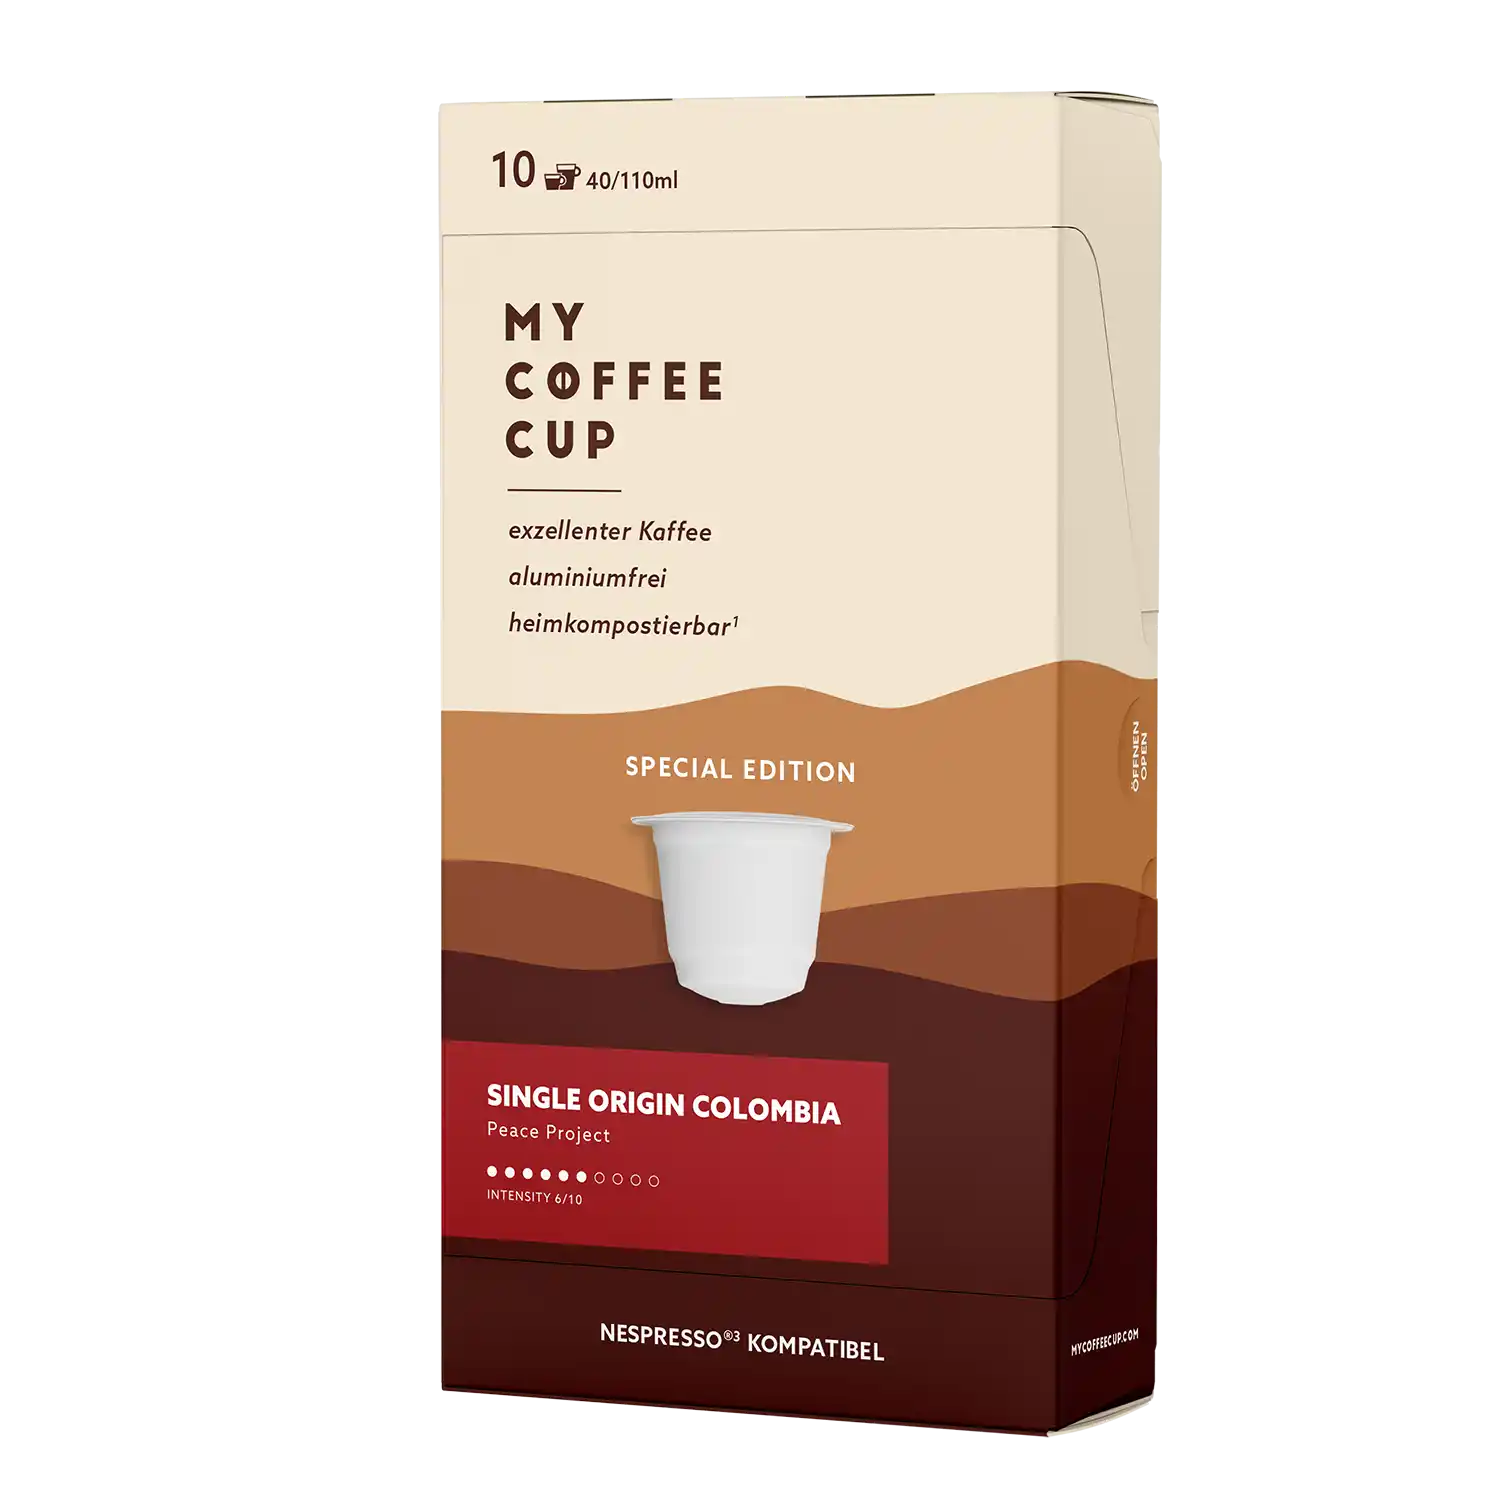 Nespresso kompatible Kapseln - single origin colombia - MyCoffeeCup.de